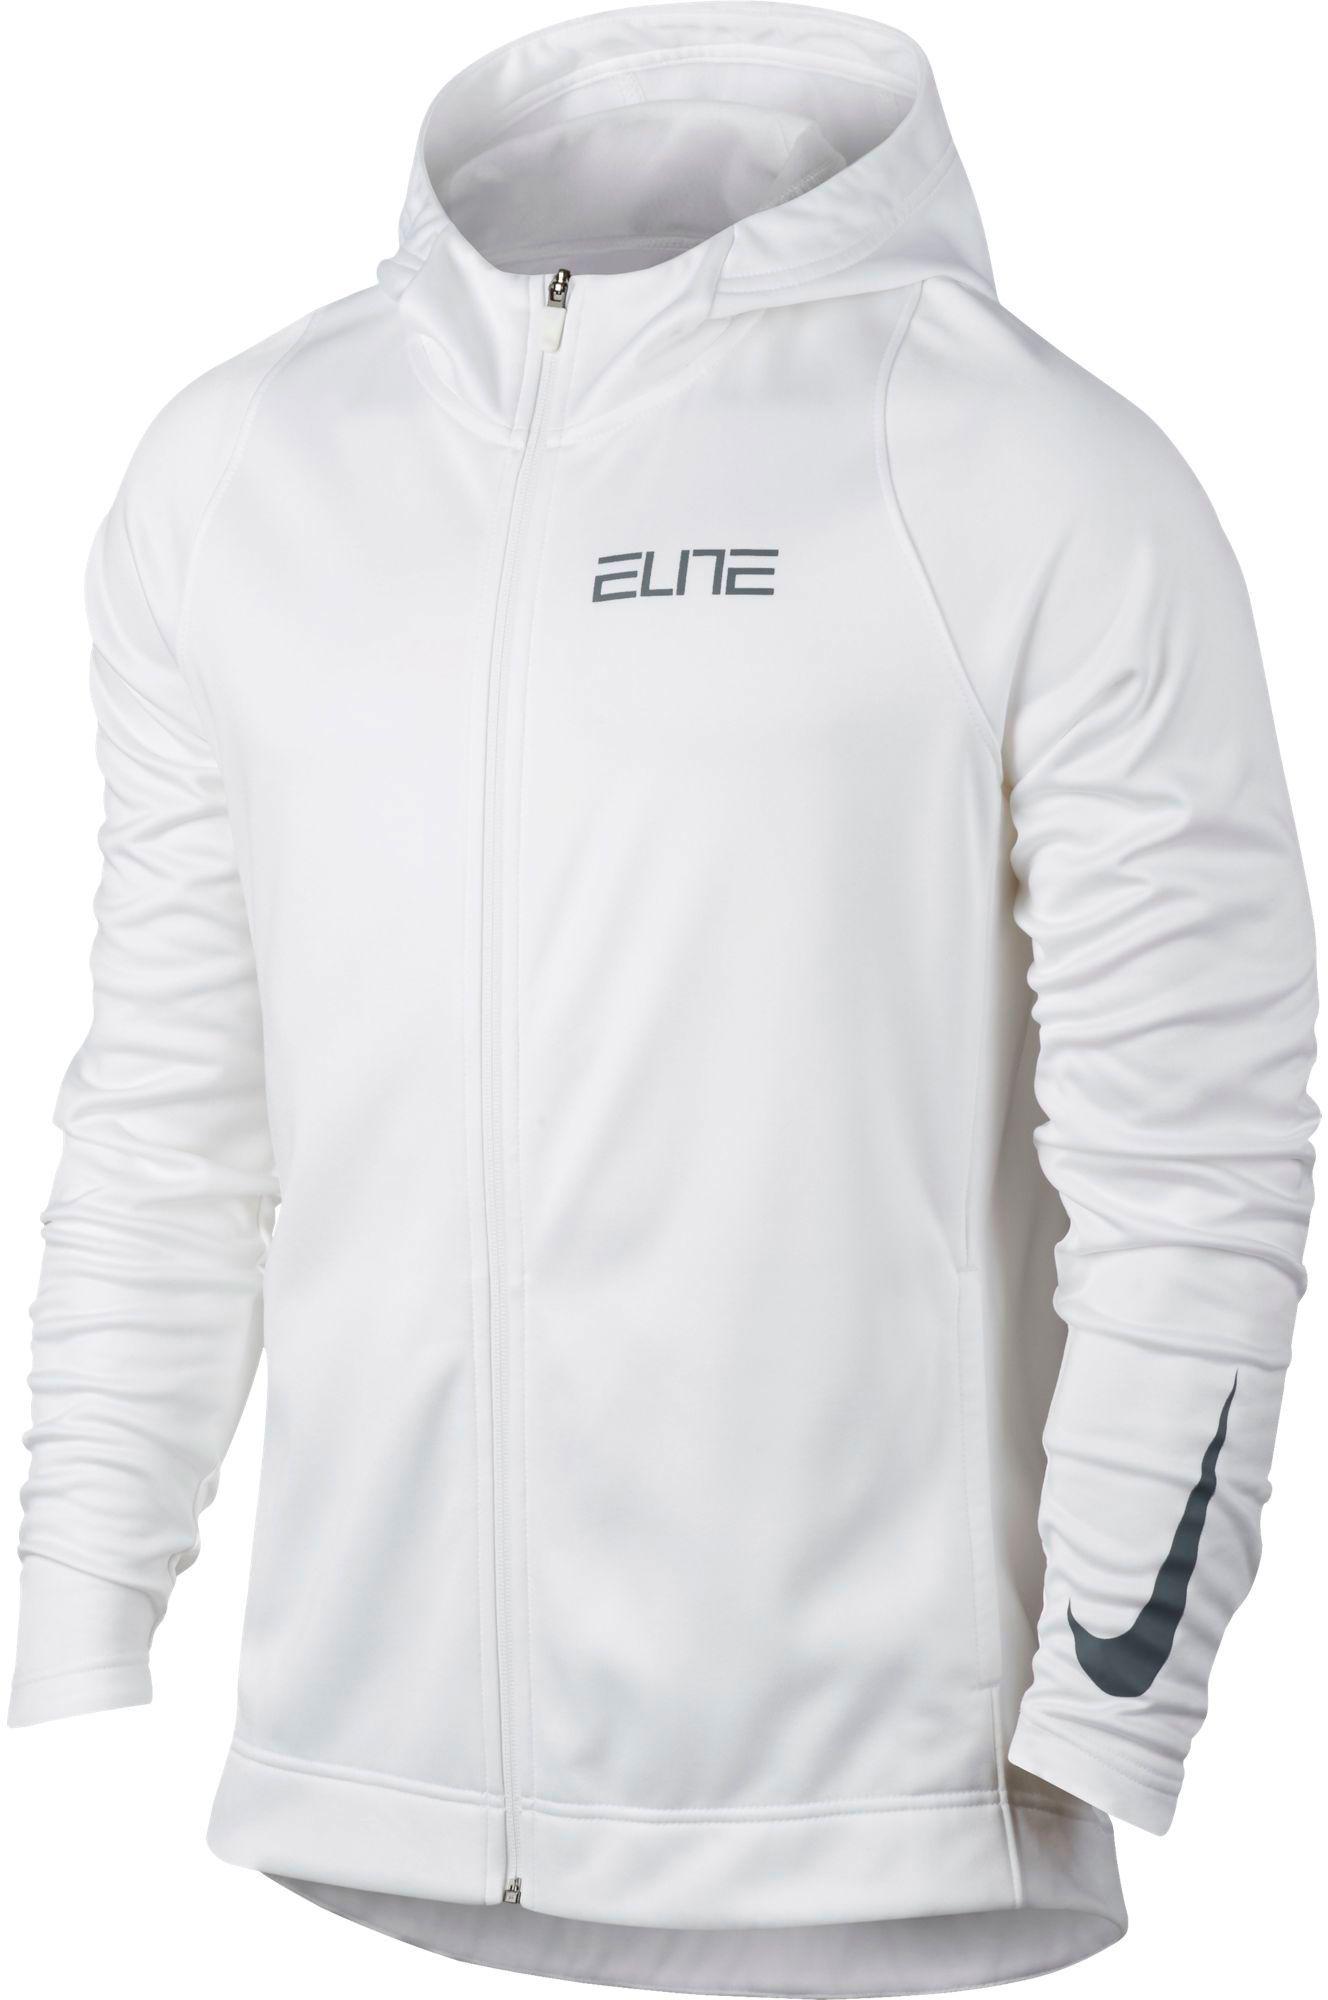 nike elite full zip hoodie